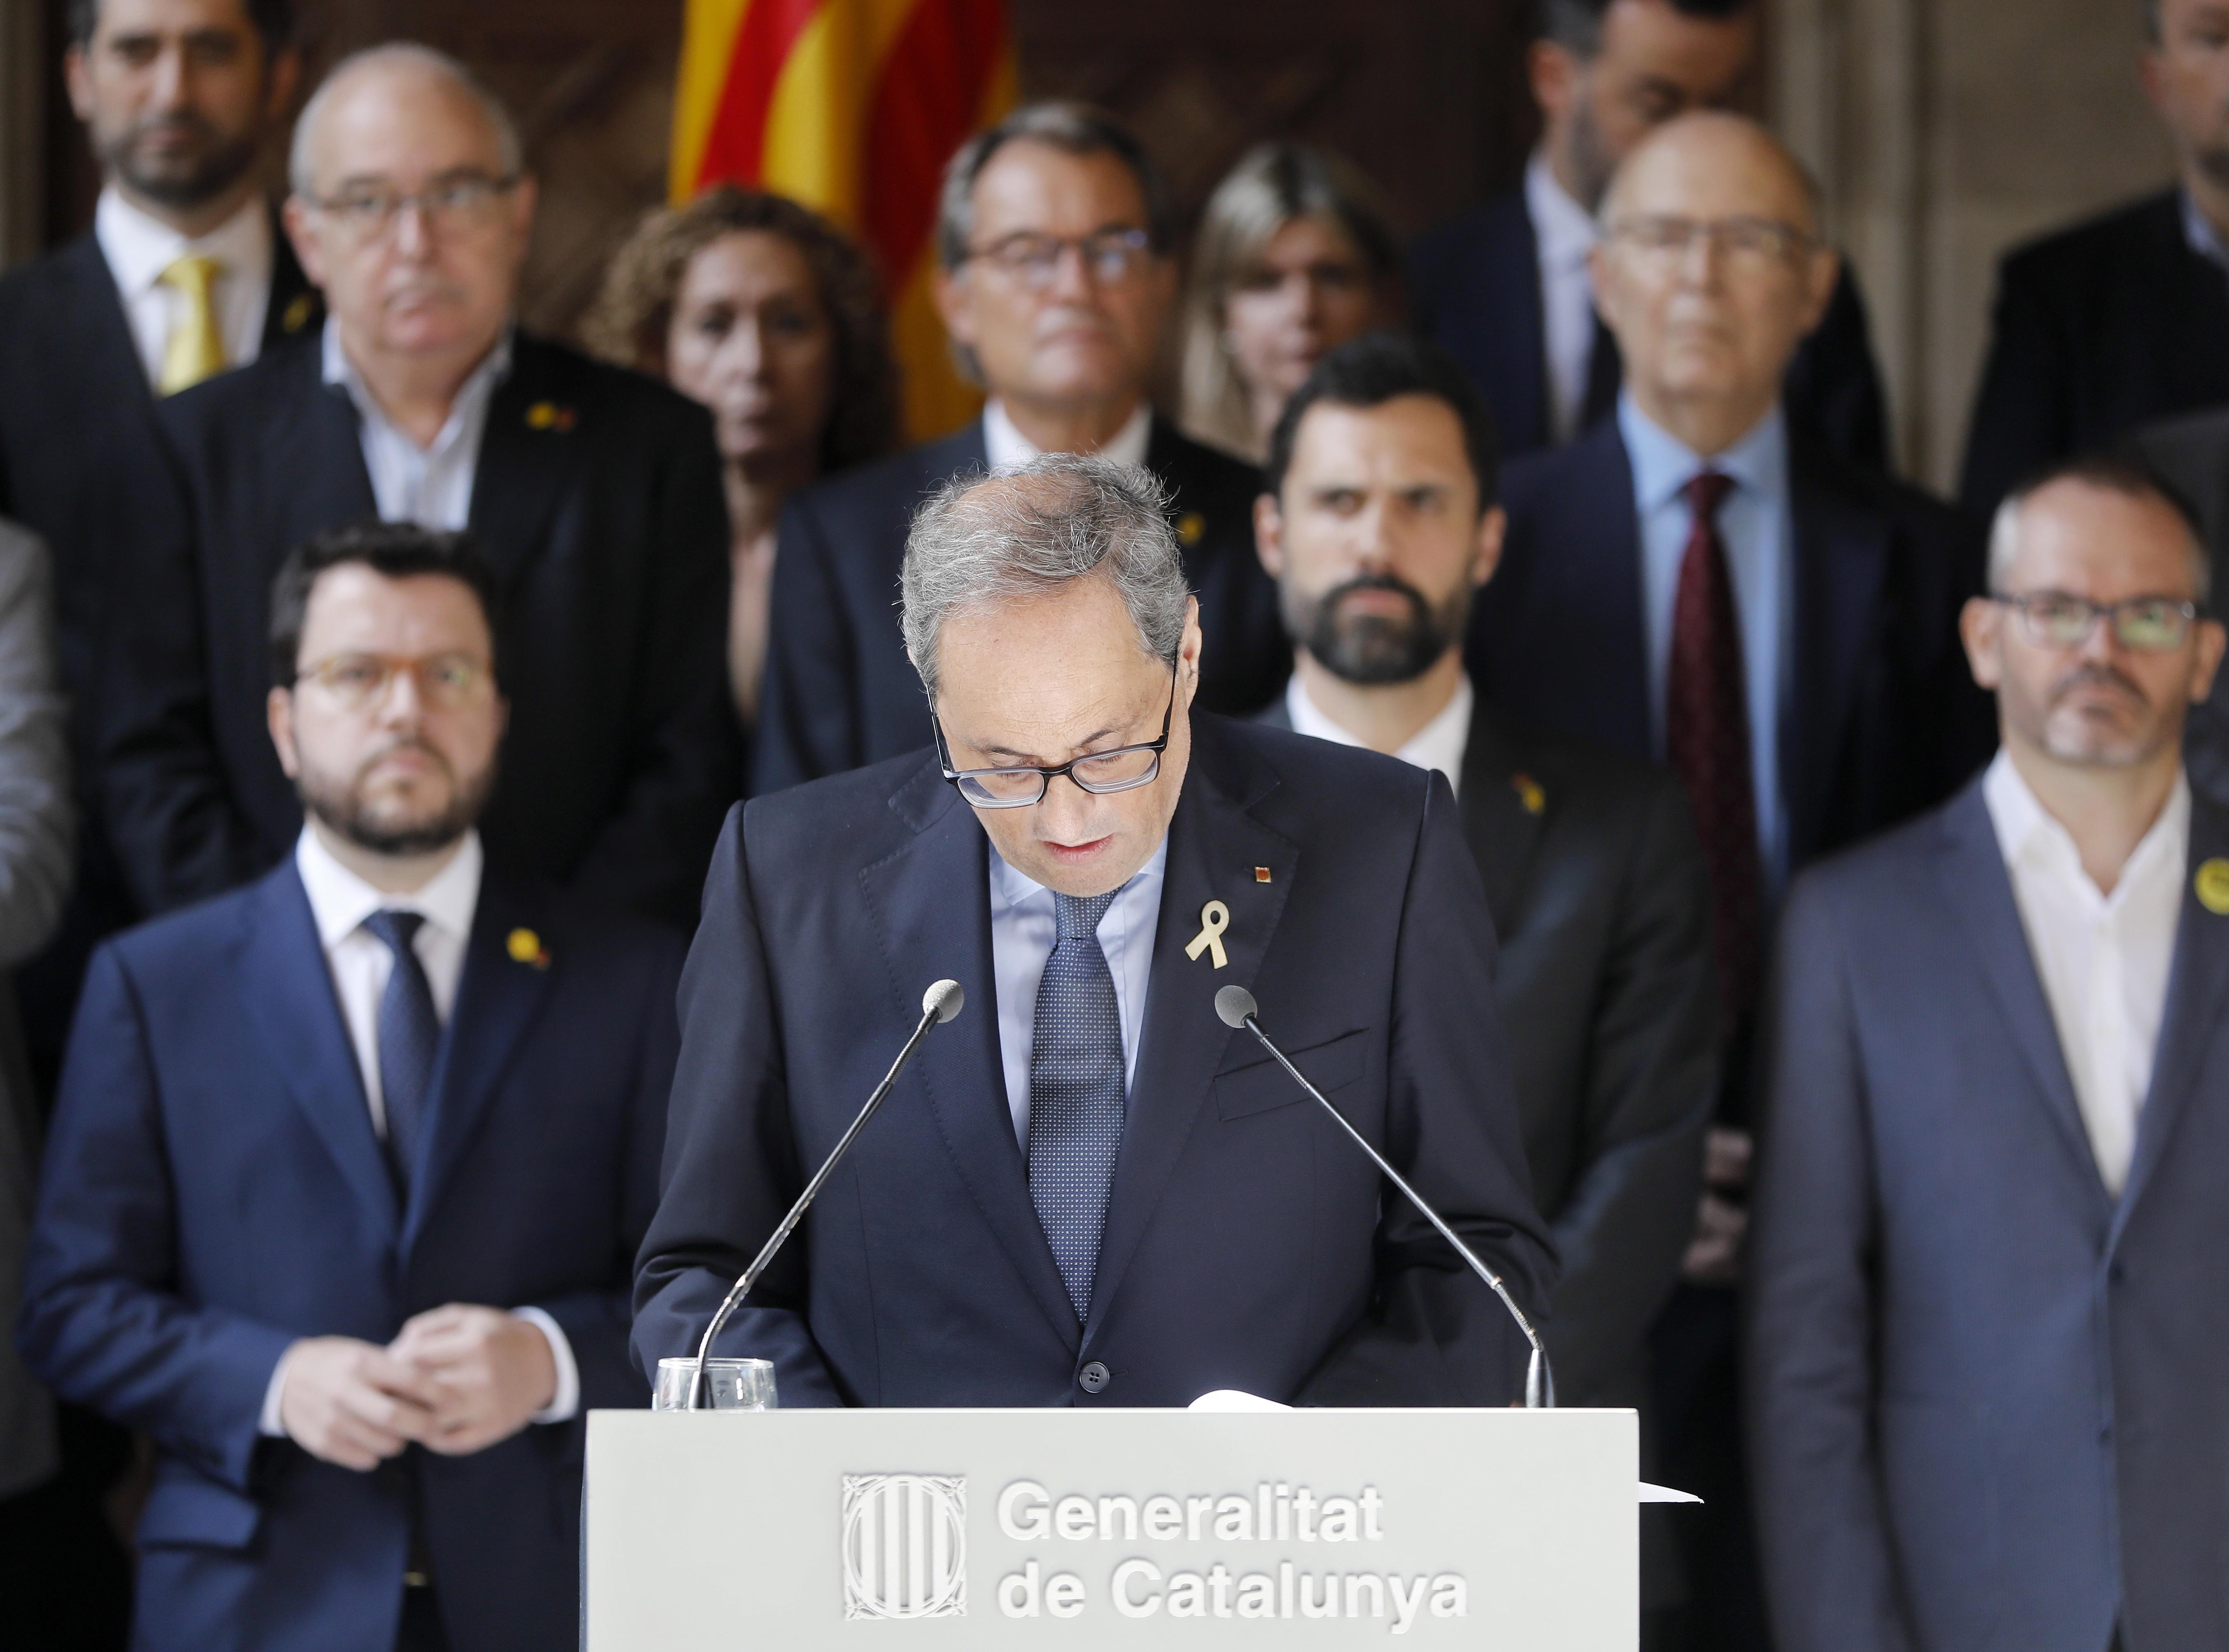 La carta (en catalán) de Torra al Rey y a Sánchez solicitando una reunión urgente